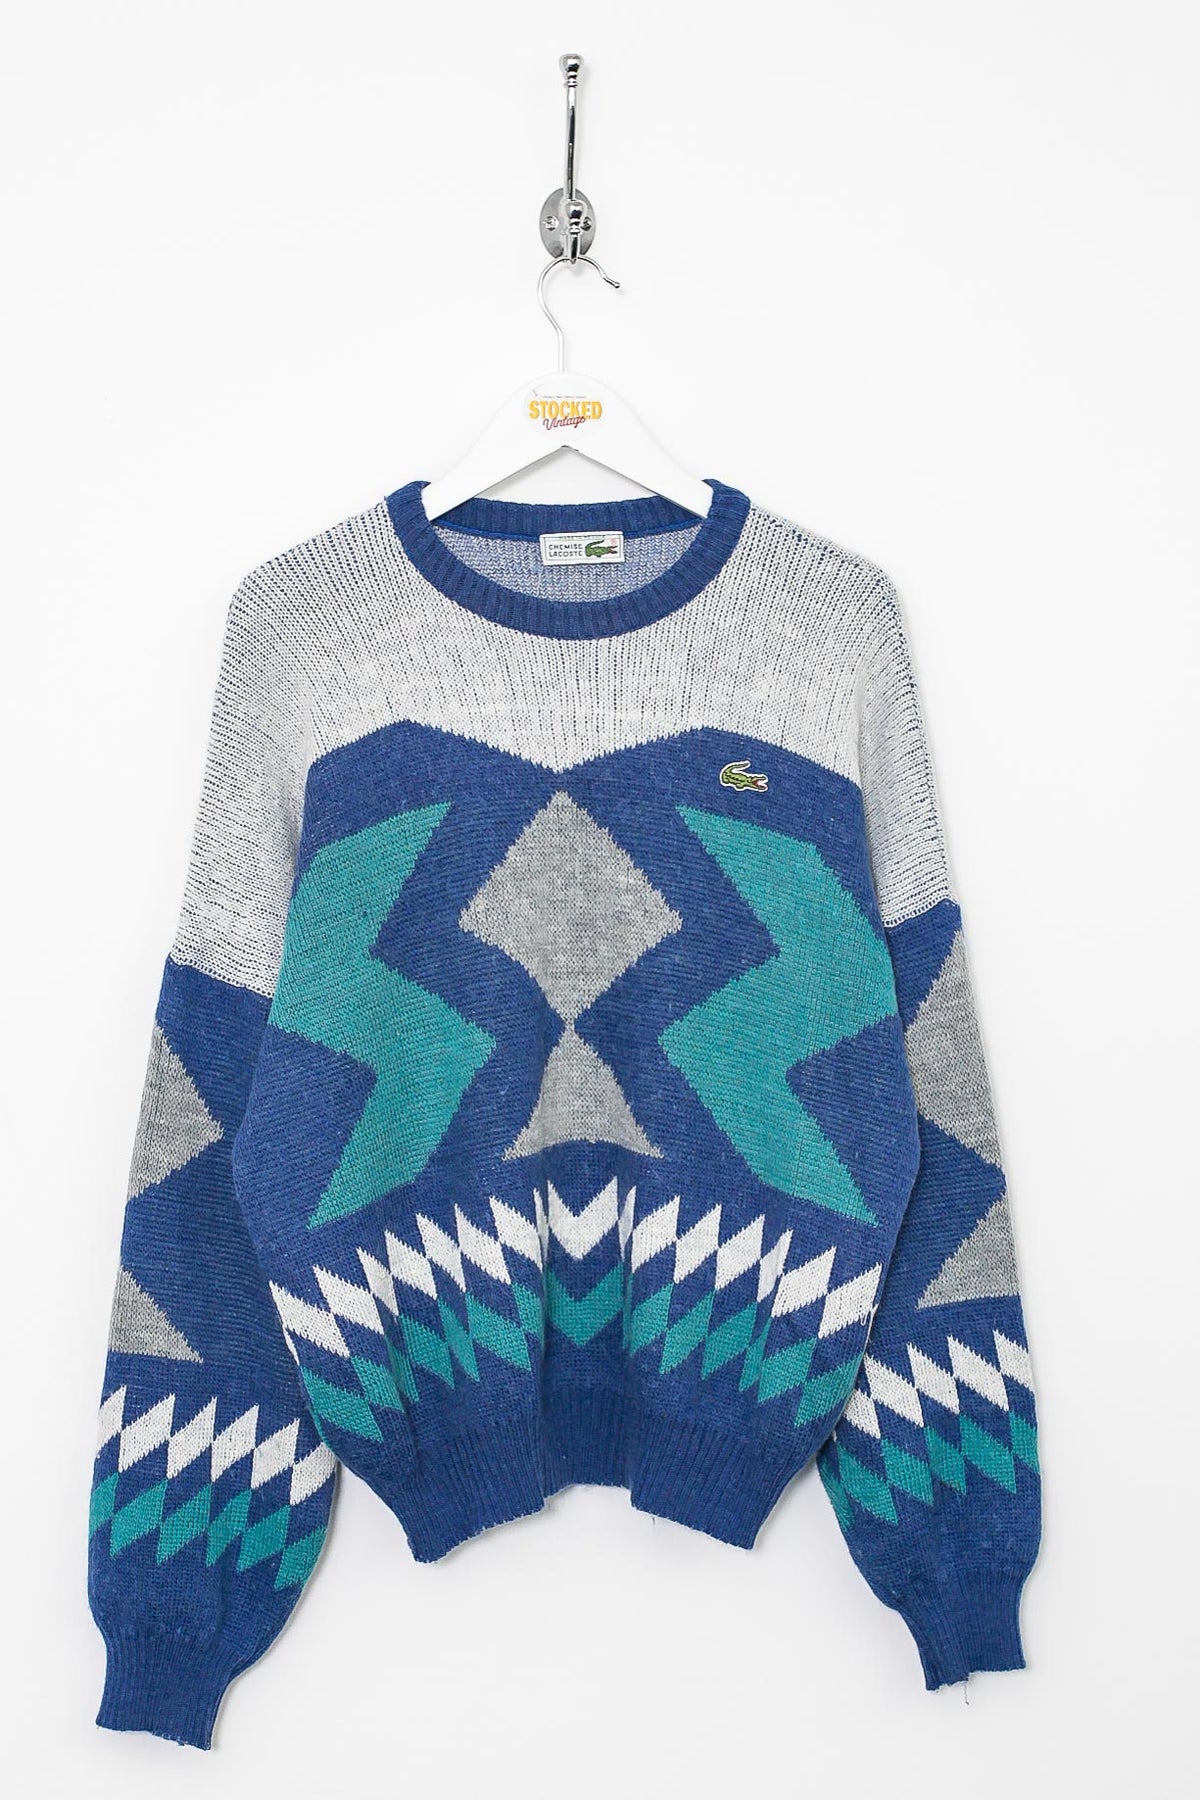 Womens 90s Lacoste Knit Sweatshirt (L)